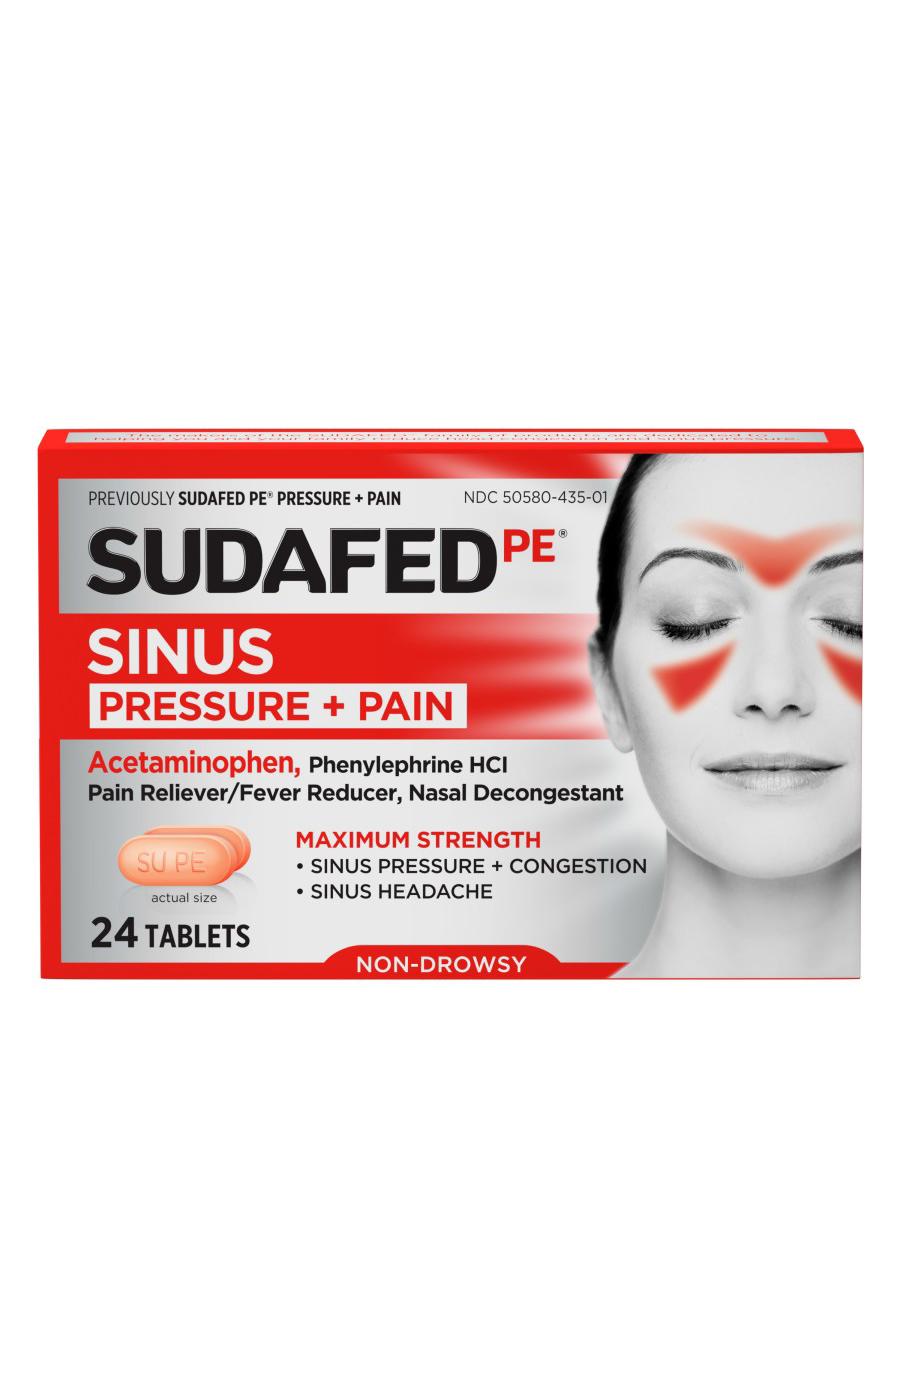 Sudafed PE Sinus Pressure + Pain Tablets; image 1 of 7